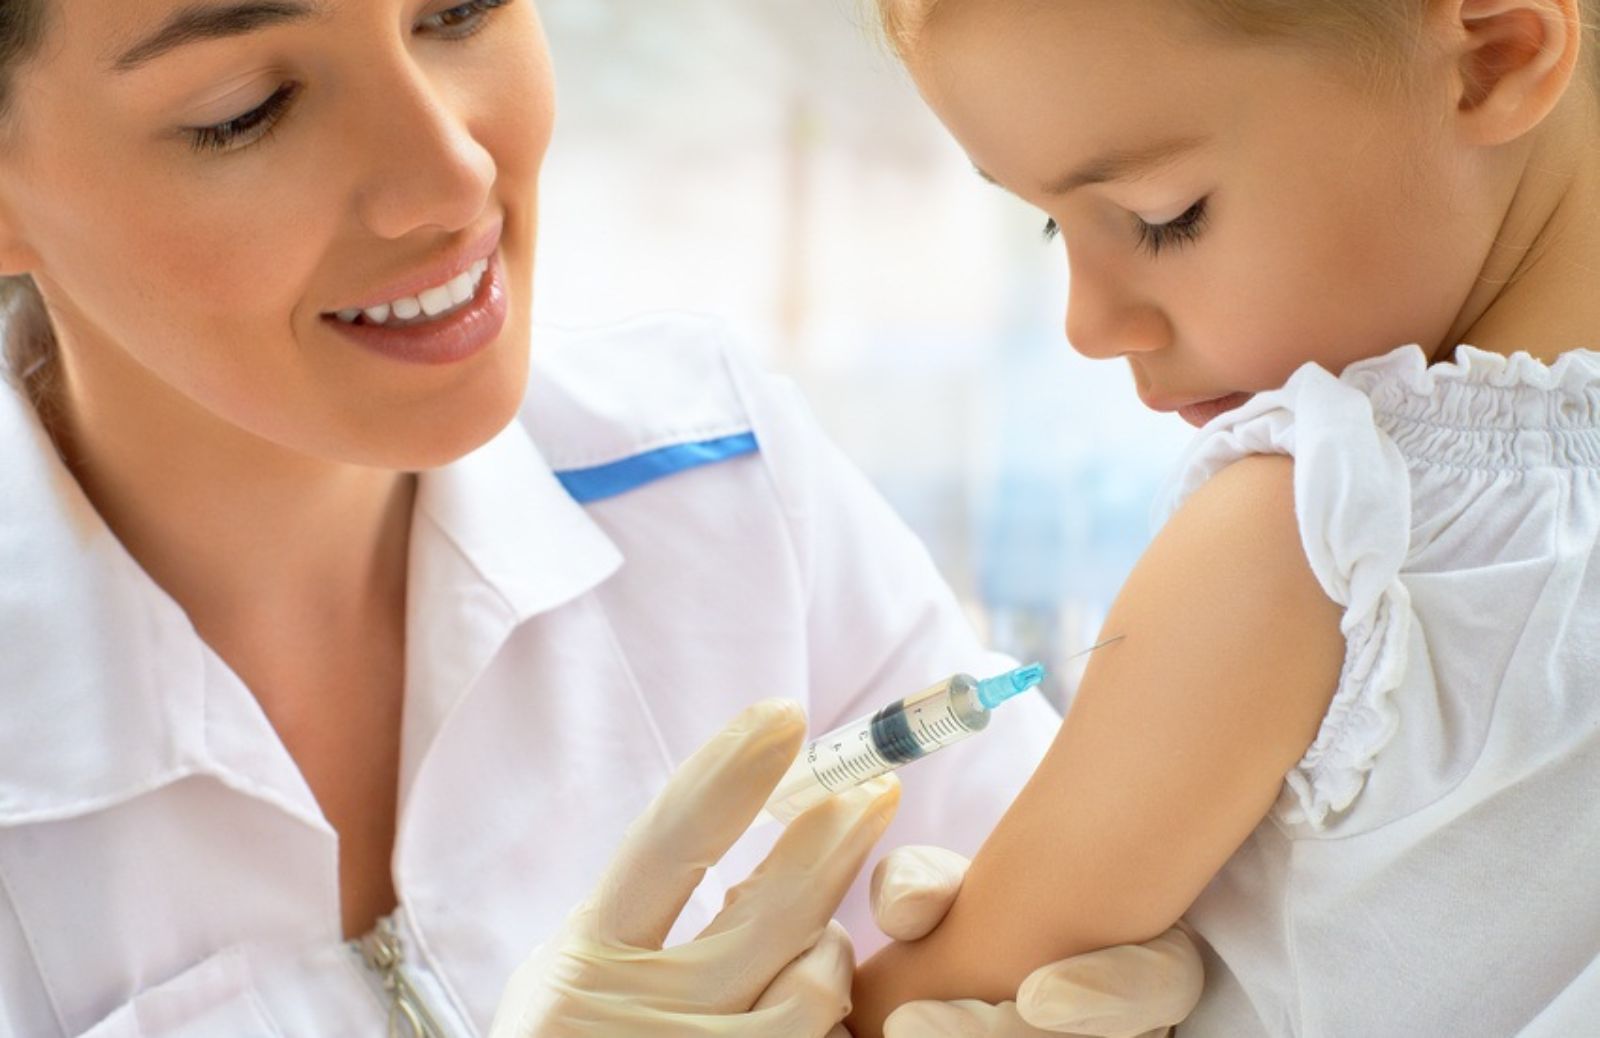 E’ vero che i vaccini possono provocare l’autismo?